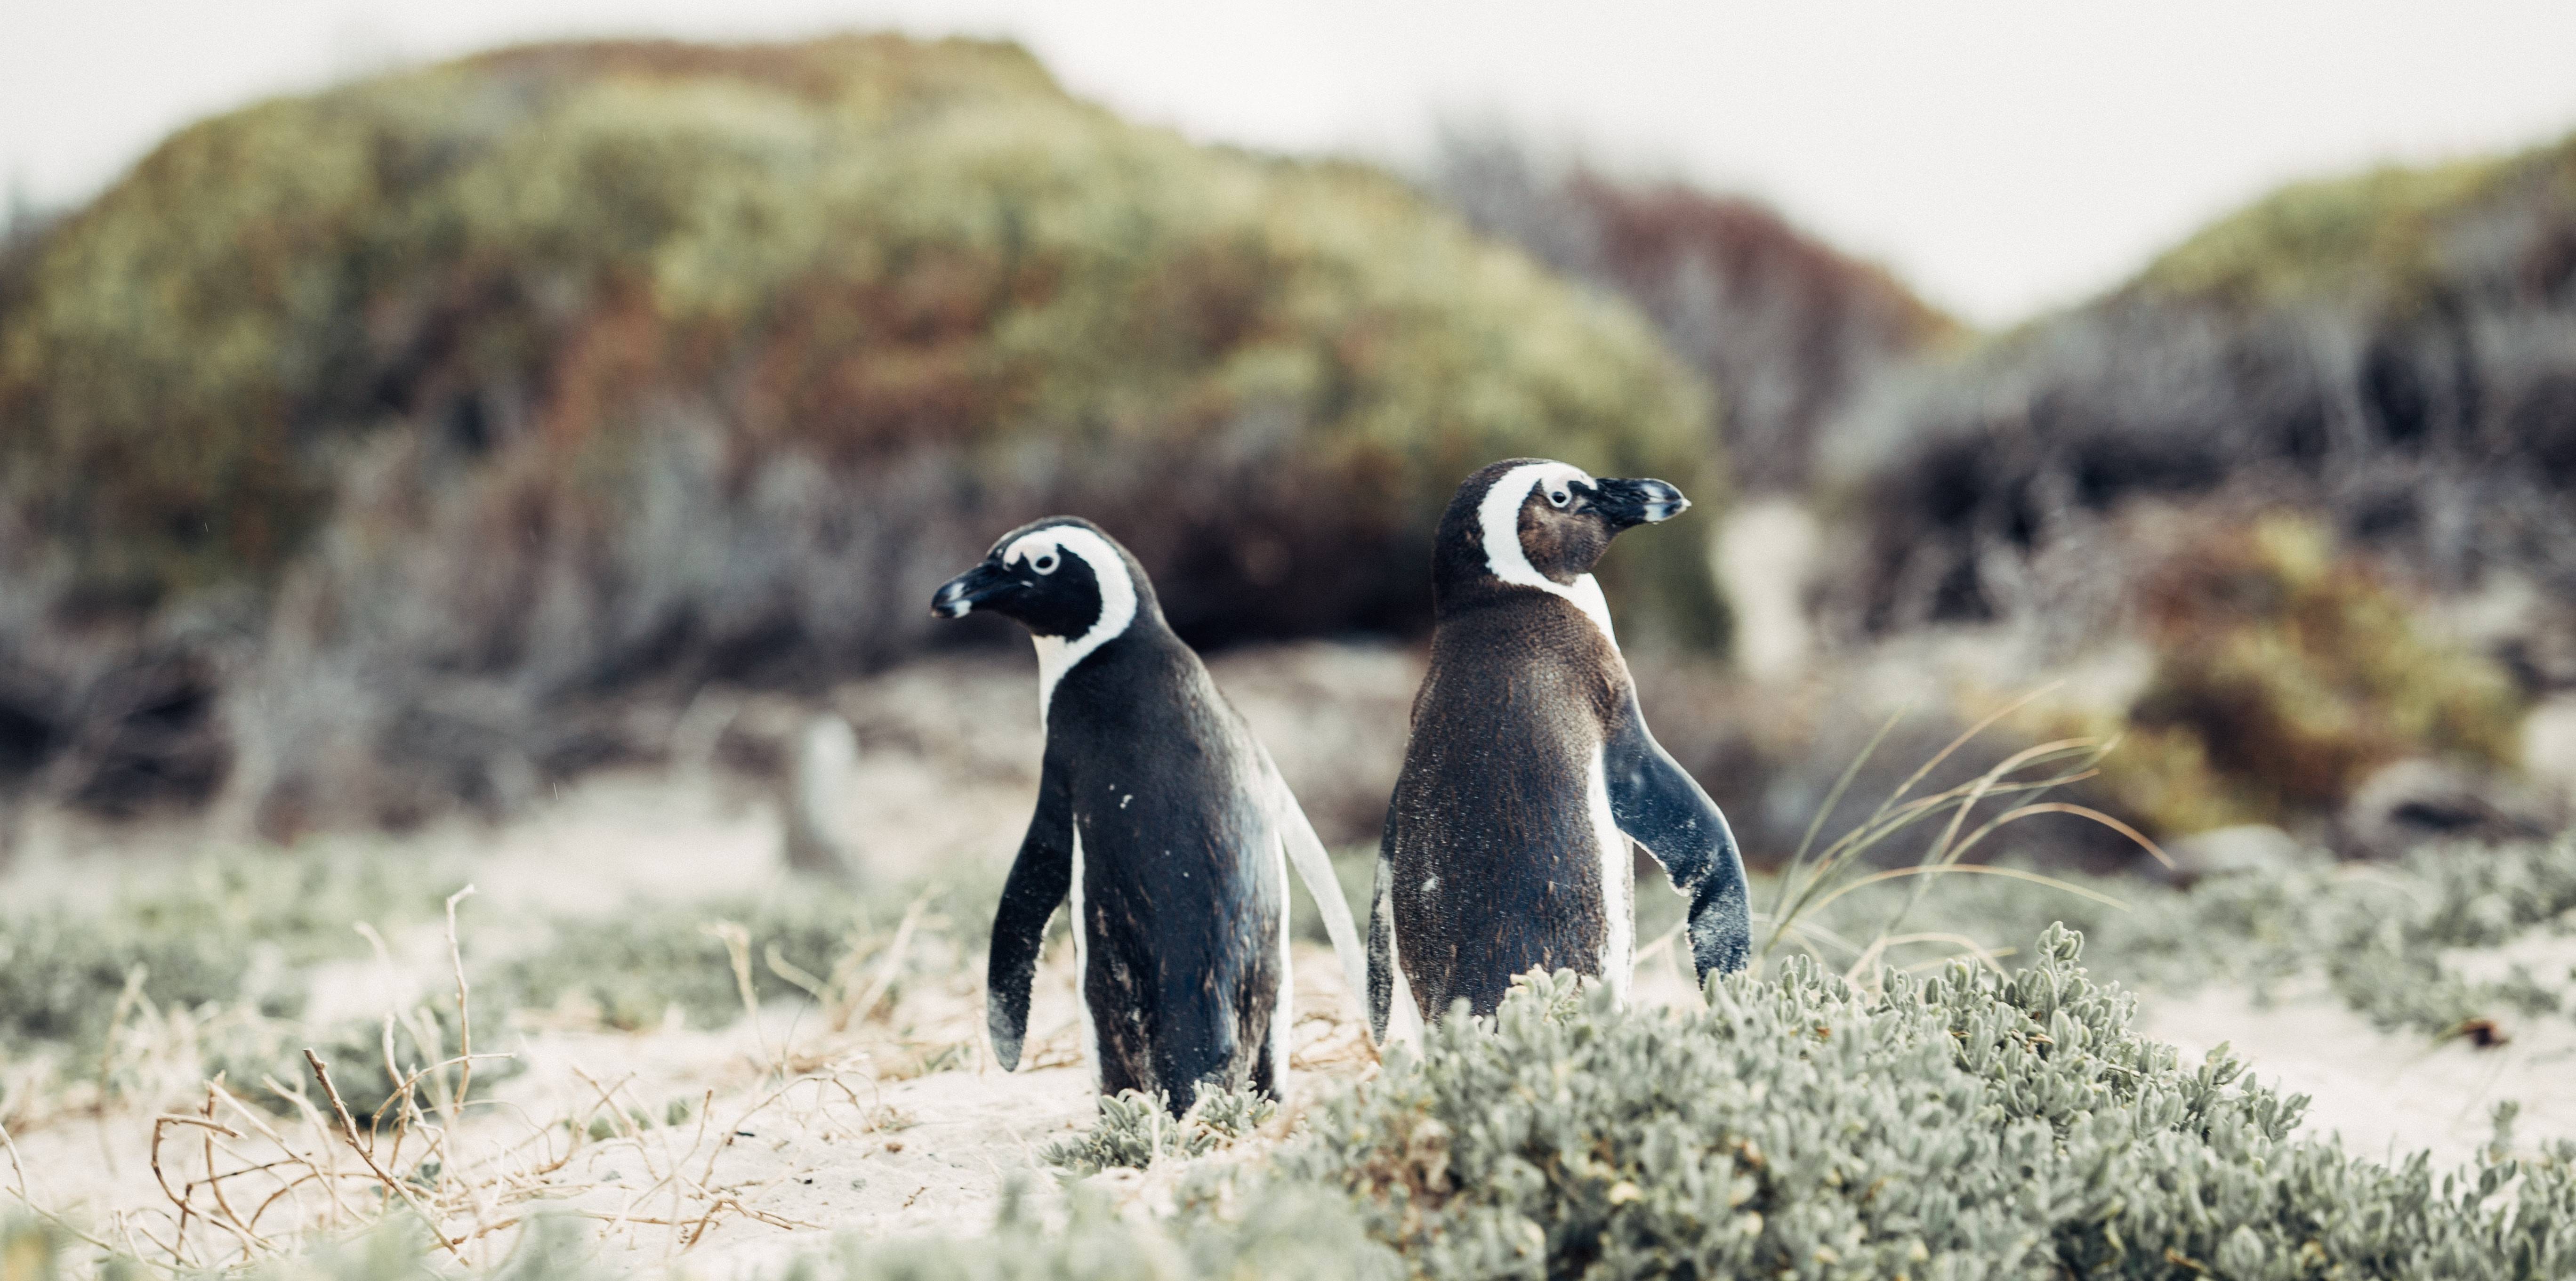 Minder dan Oogverblindend Dwang Pinguïns spotten in Zuid-Afrika - 333travel